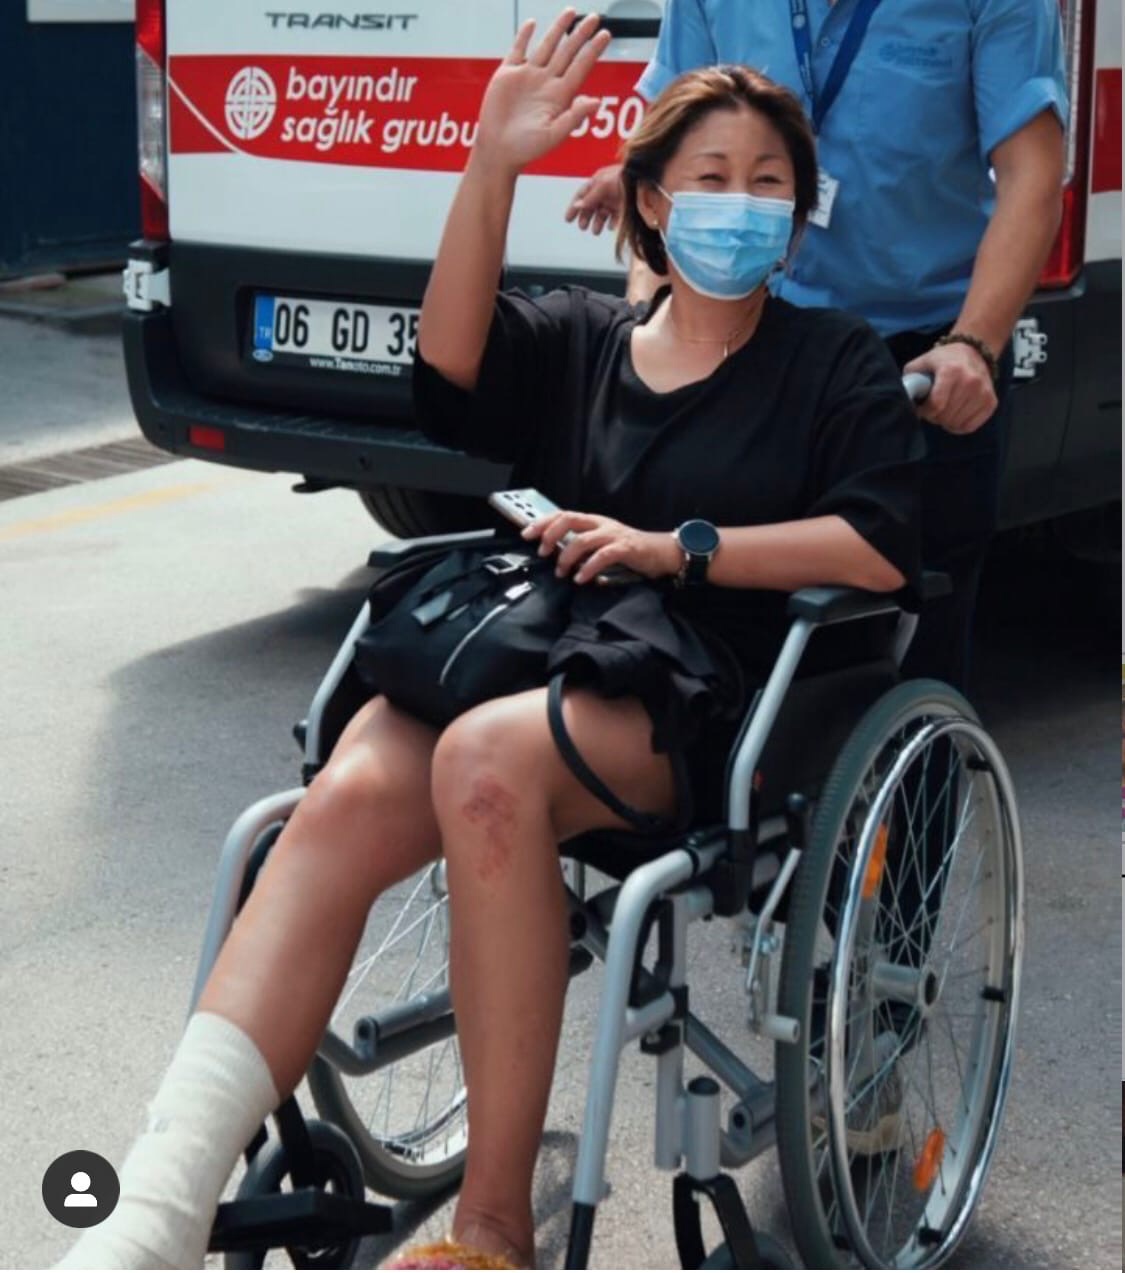 "Маленький казус": Анита Цой оказалась в инвалидном кресле